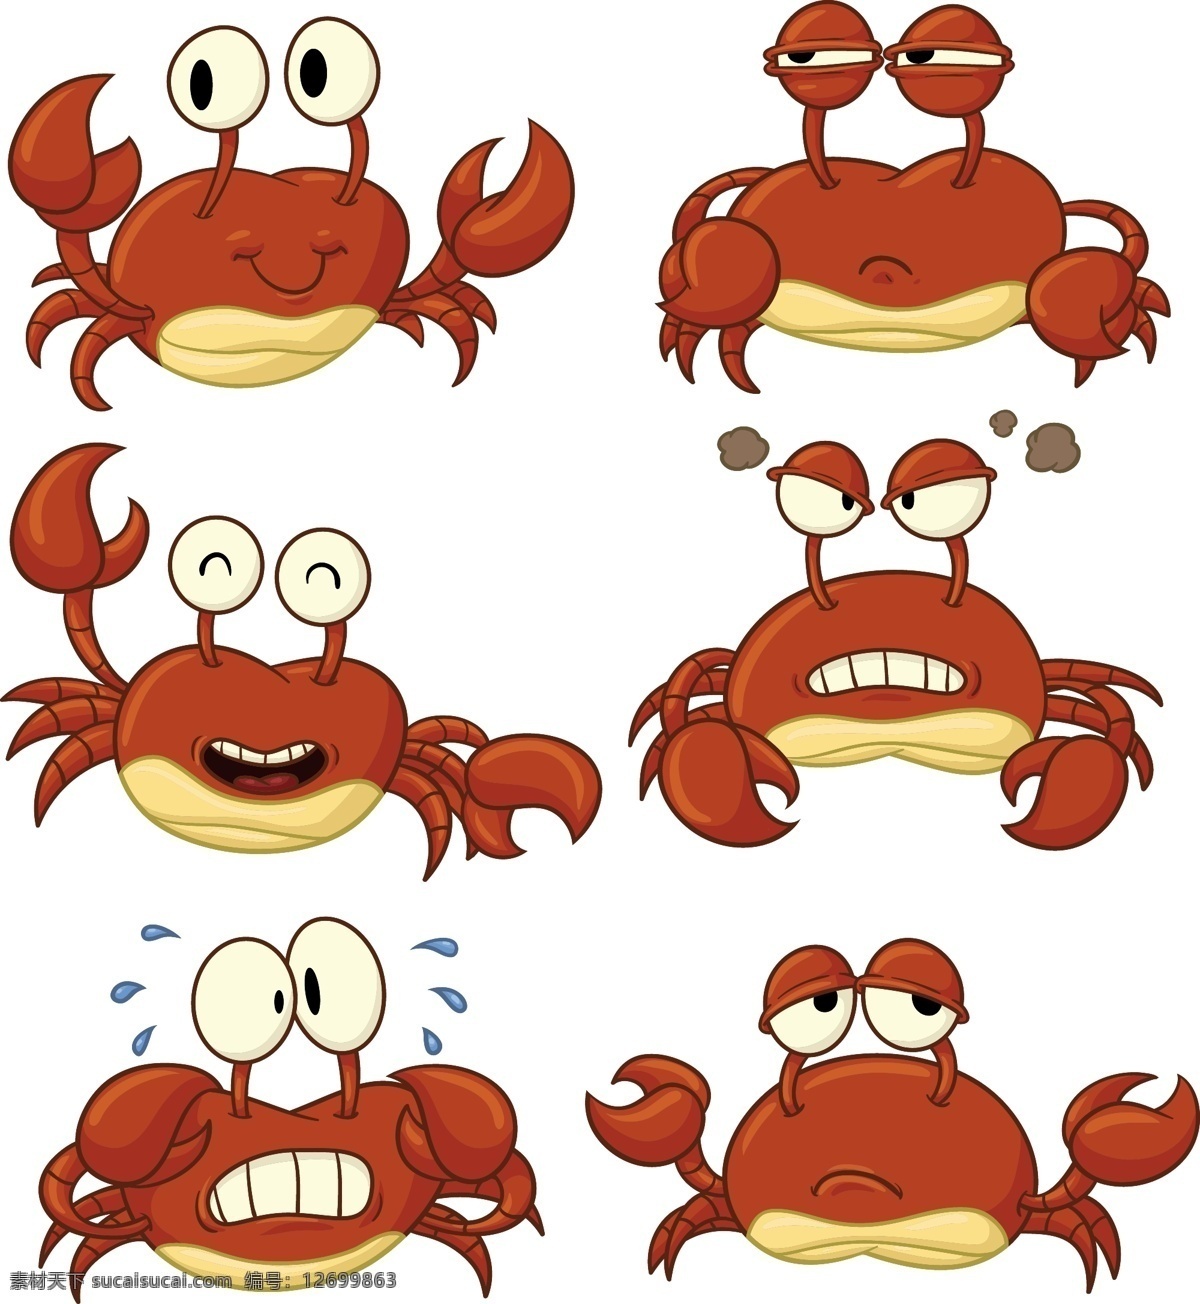 卡通螃蟹 卡通海鲜 卡通动物 卡通形象 可爱动物 拟人化 矢量动物 动漫动画